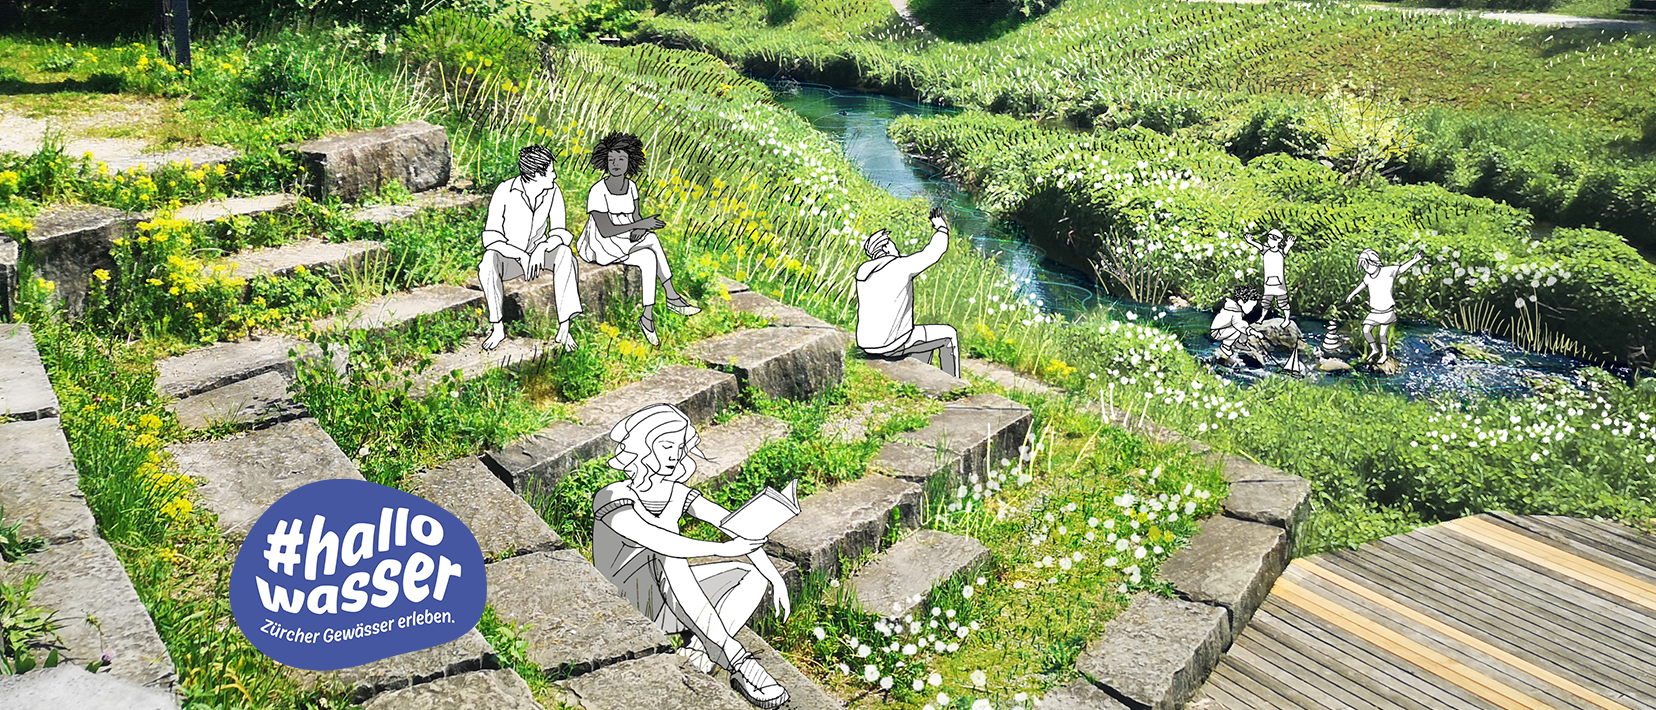 Flusslandschaft am Bach mit Steinstufen, auf denen Menschen plaudernd und lesend visualisiert worden sind. Im Bach spielen Kinder.